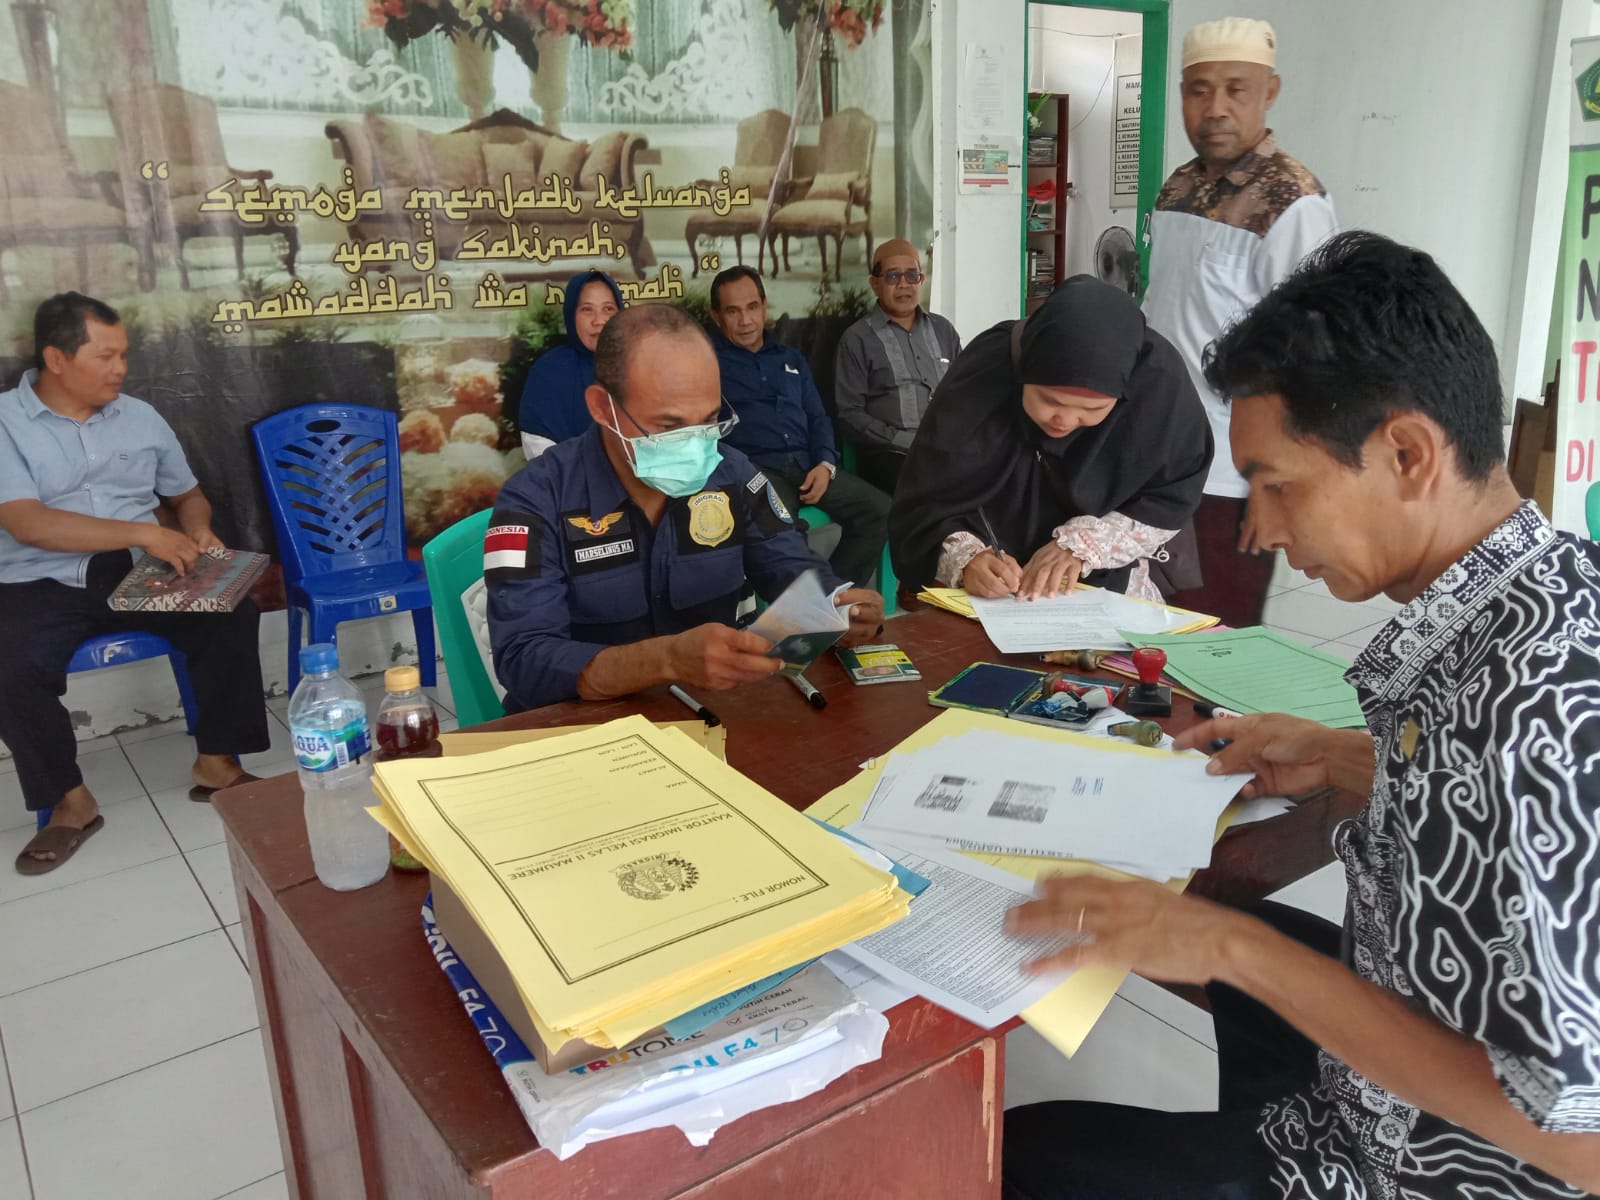 Gelar Pelayanan Eazy Passport bagi Calon Jemaah Haji/Umroh di Kabupaten Ende sebagai Wujud Pelayanan Prima terhadap Masyarakat